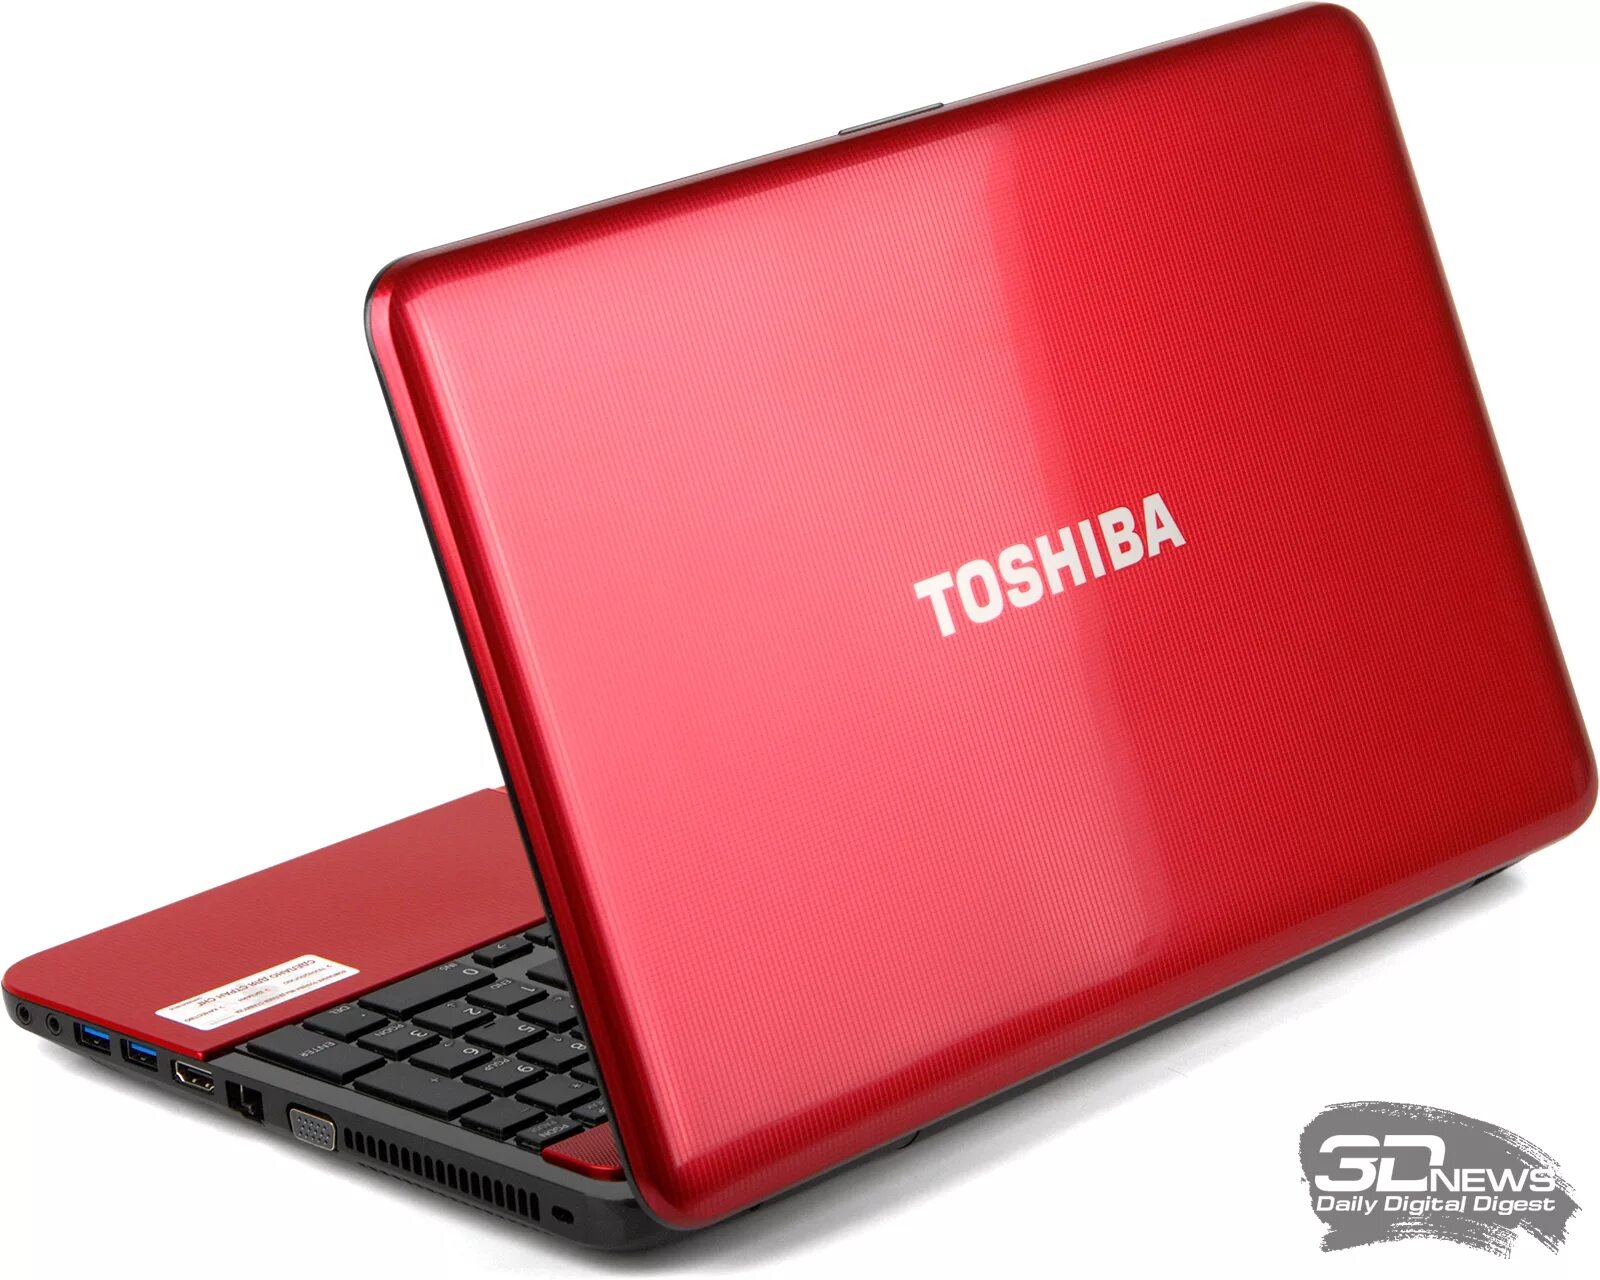 Тошиба 850 Satellite. Ноутбук Toshiba Satellite l750. Toshiba Satellite l850. Красный ноутбук Тошиба r 850. Купить ноутбук в воронеже недорого